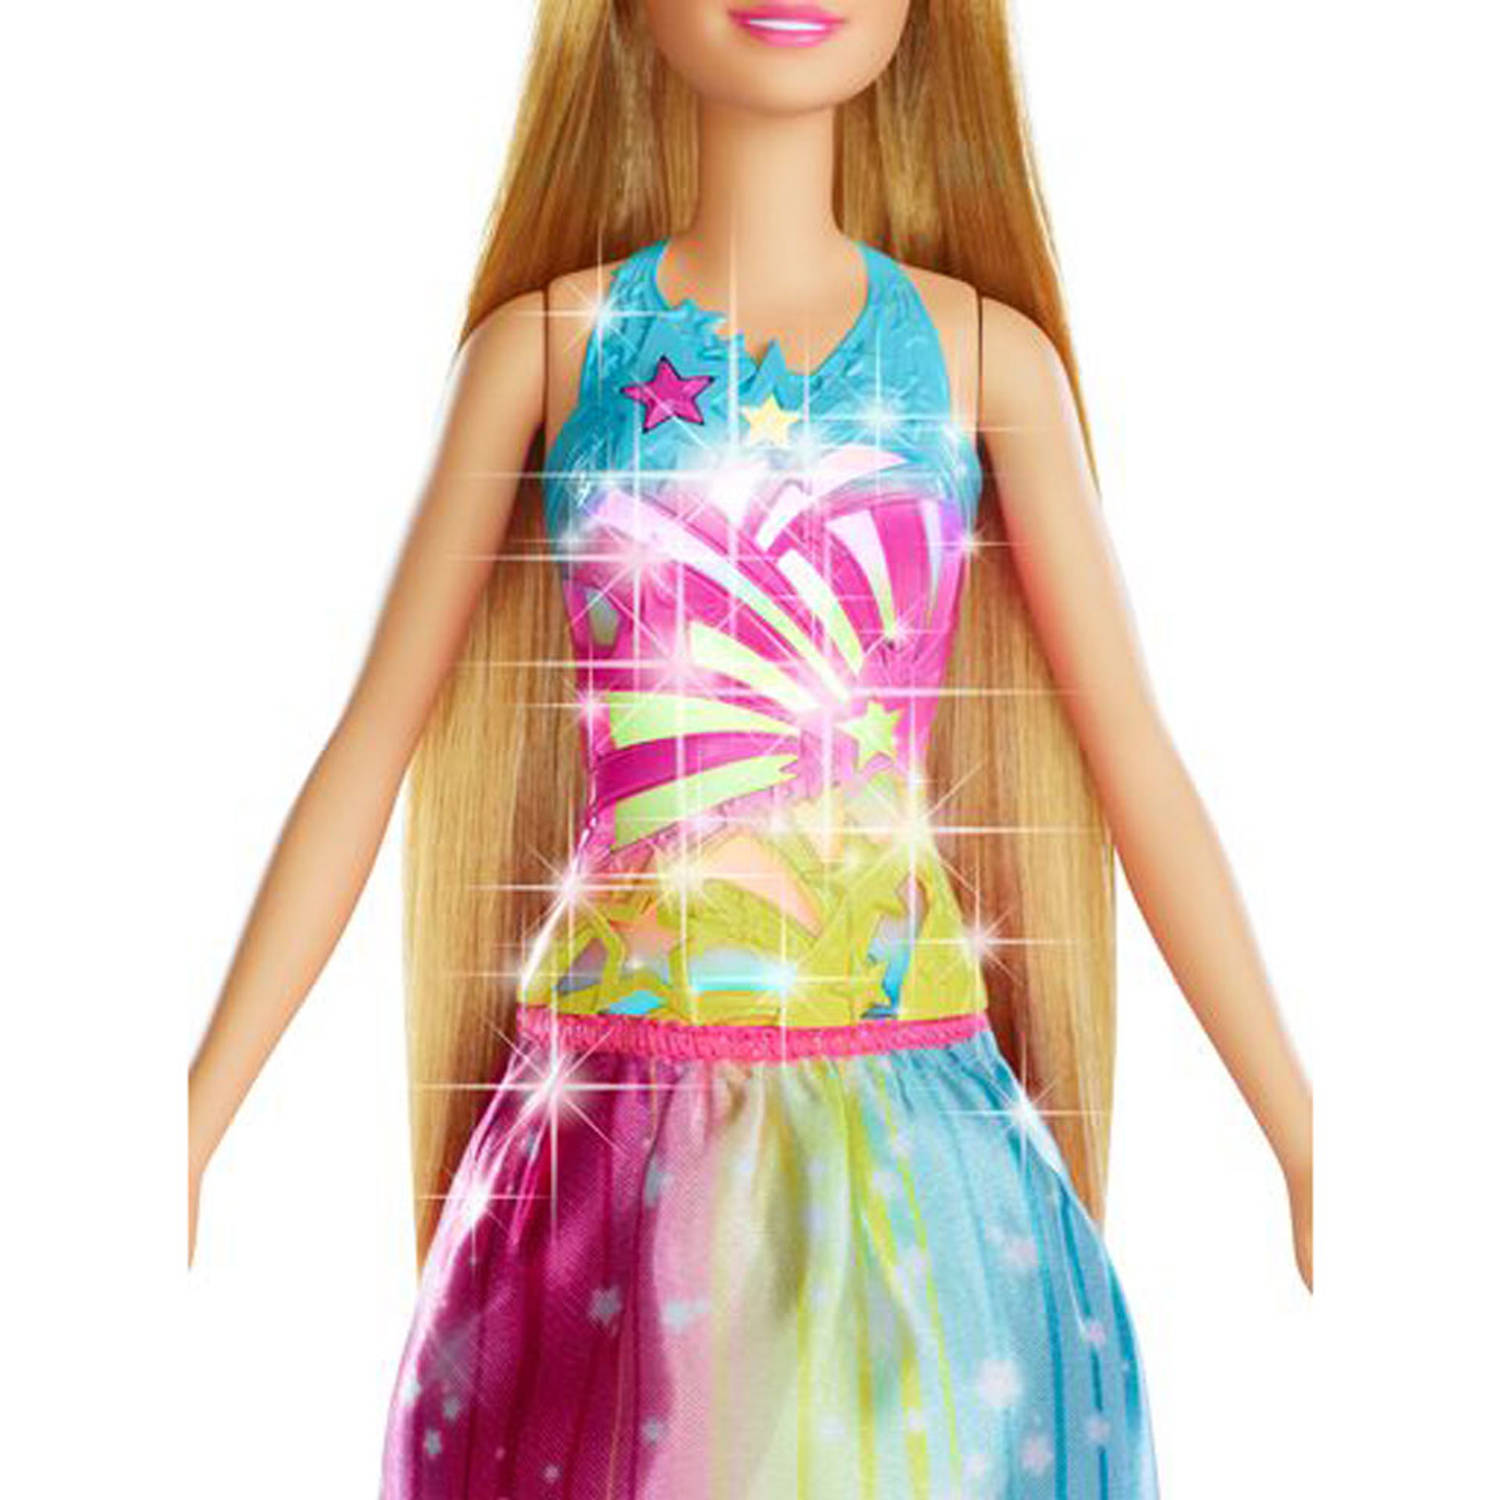 mengen gerucht Mediaan Barbie Dreamtopia Twinkelend Haar prinses pop | Blokker